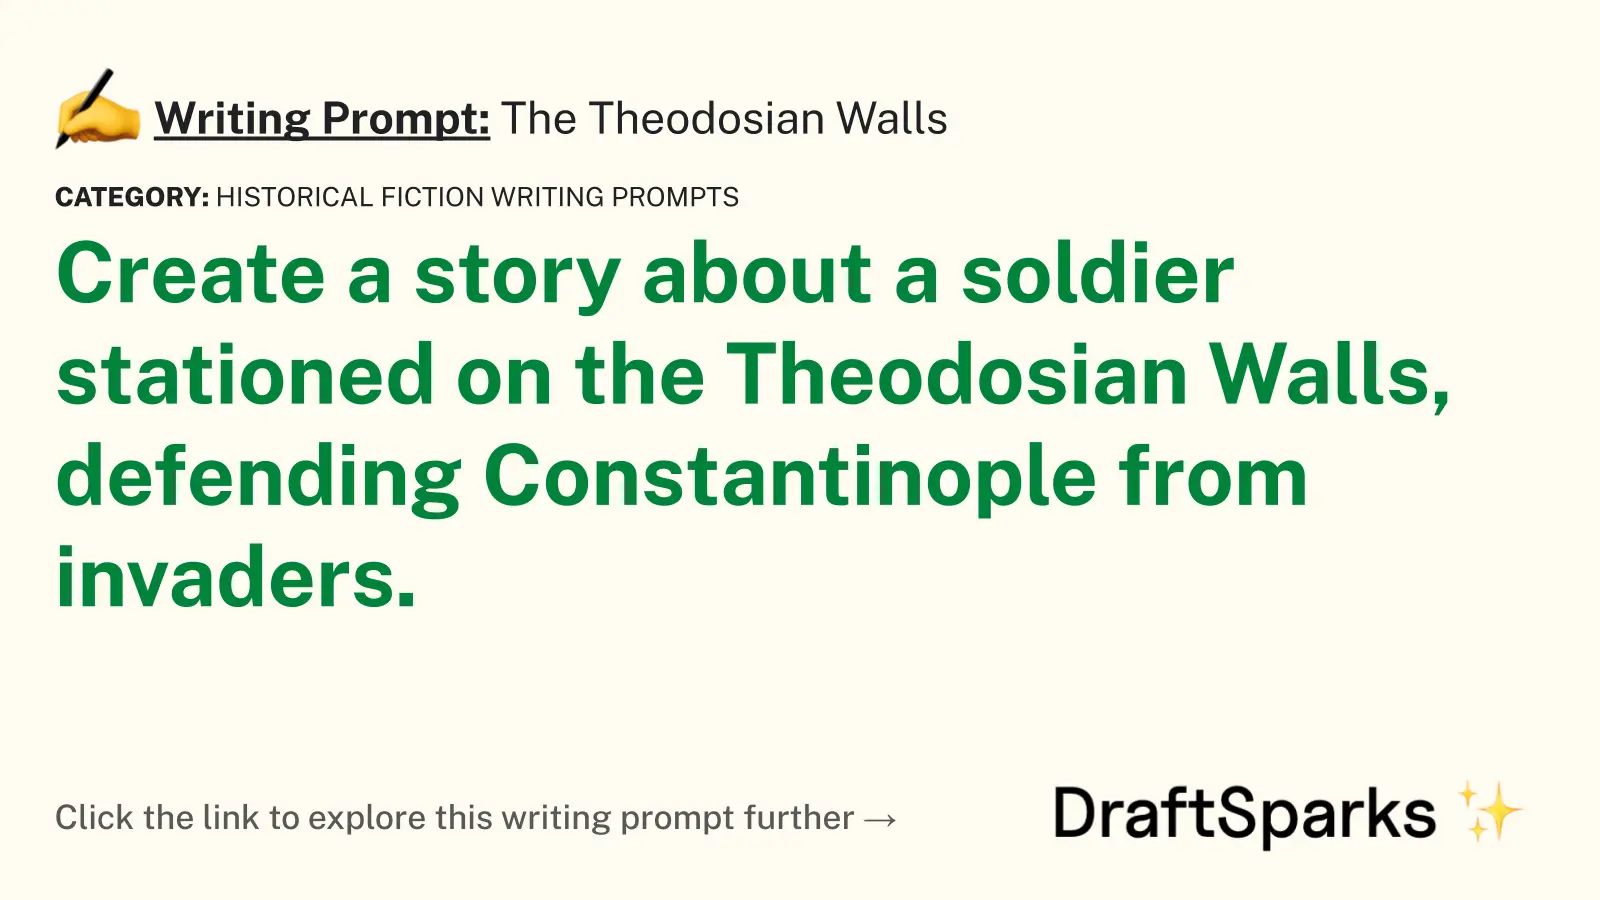 The Theodosian Walls